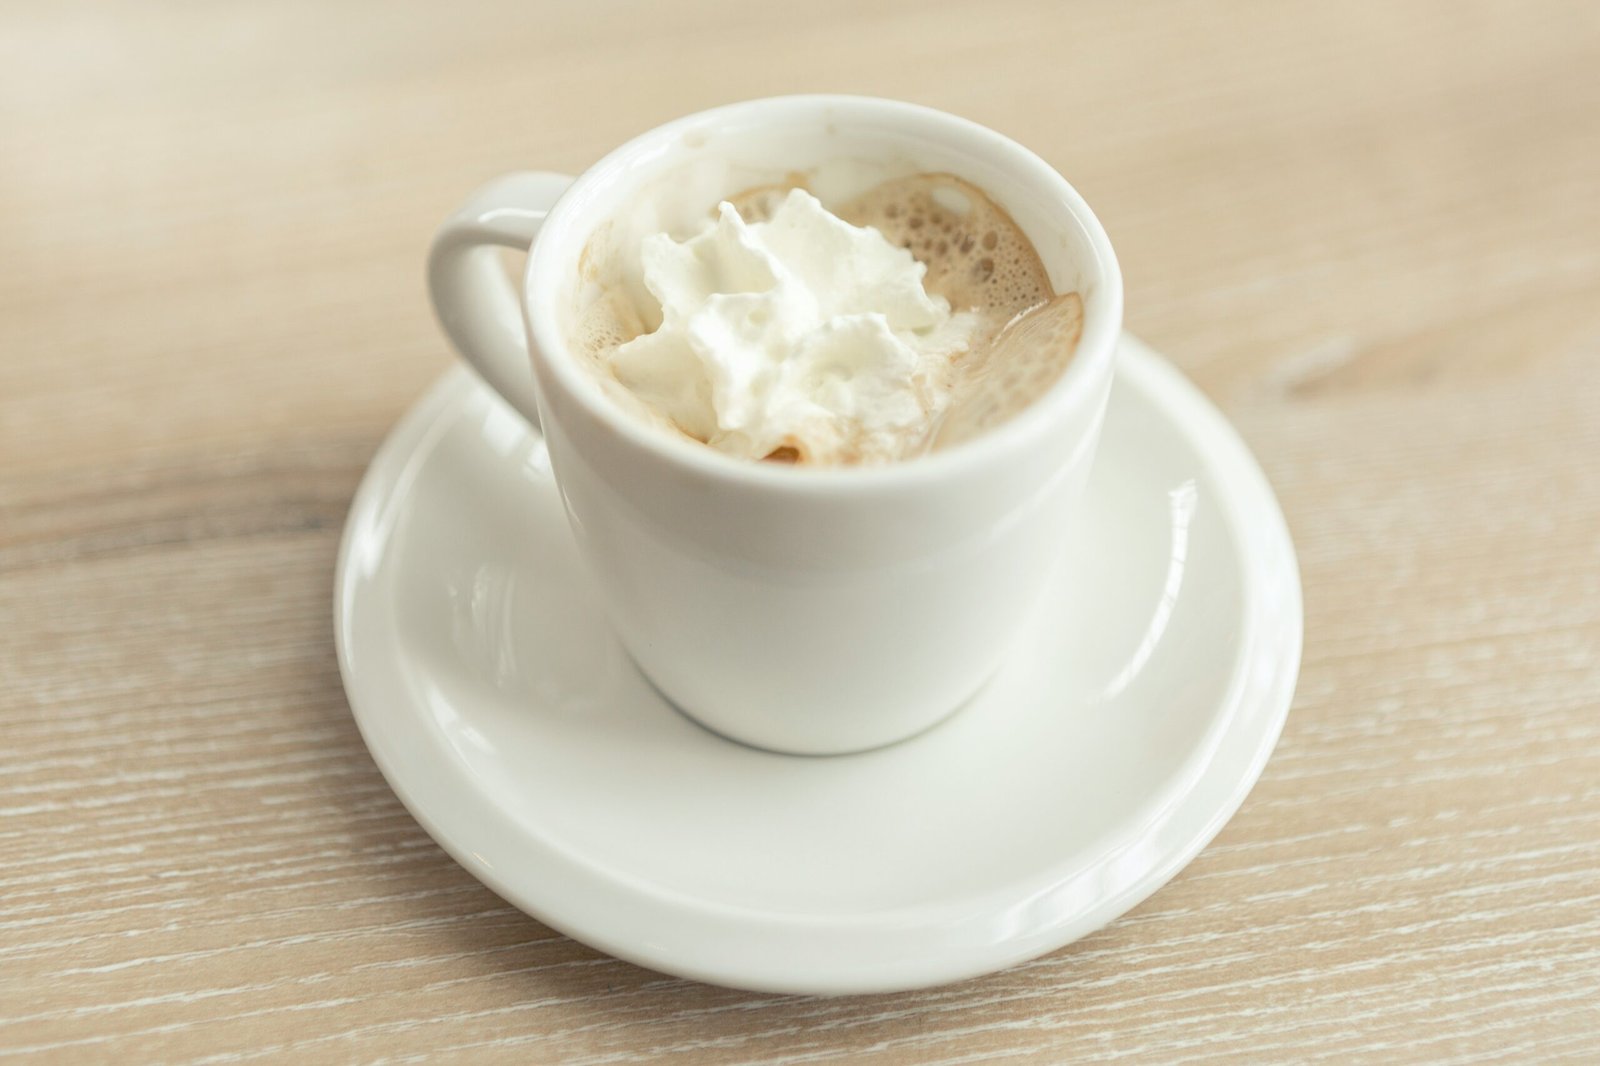 découvrez le mousseur à lait parfait pour vos besoins en café et dégustez de délicieuses boissons mousseuses à la maison grâce à notre sélection de mousseurs à lait de haute qualité.